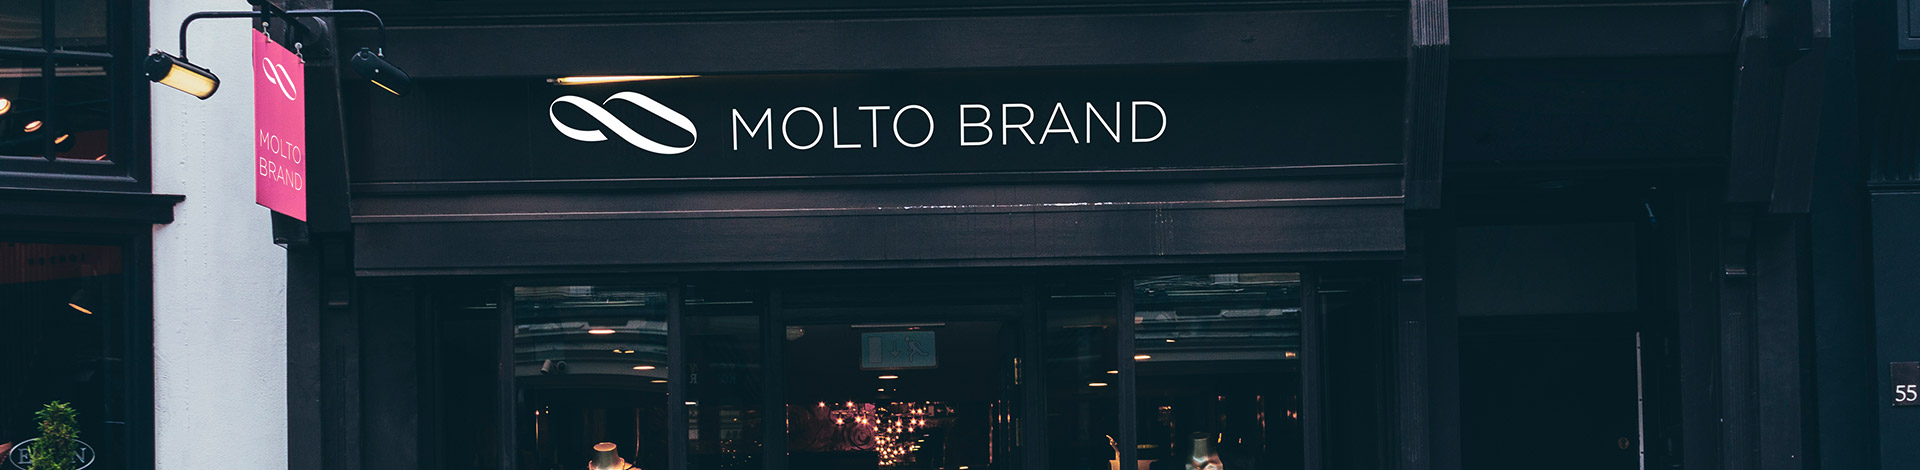 Логотип для производителя женской обуви Molto Brand